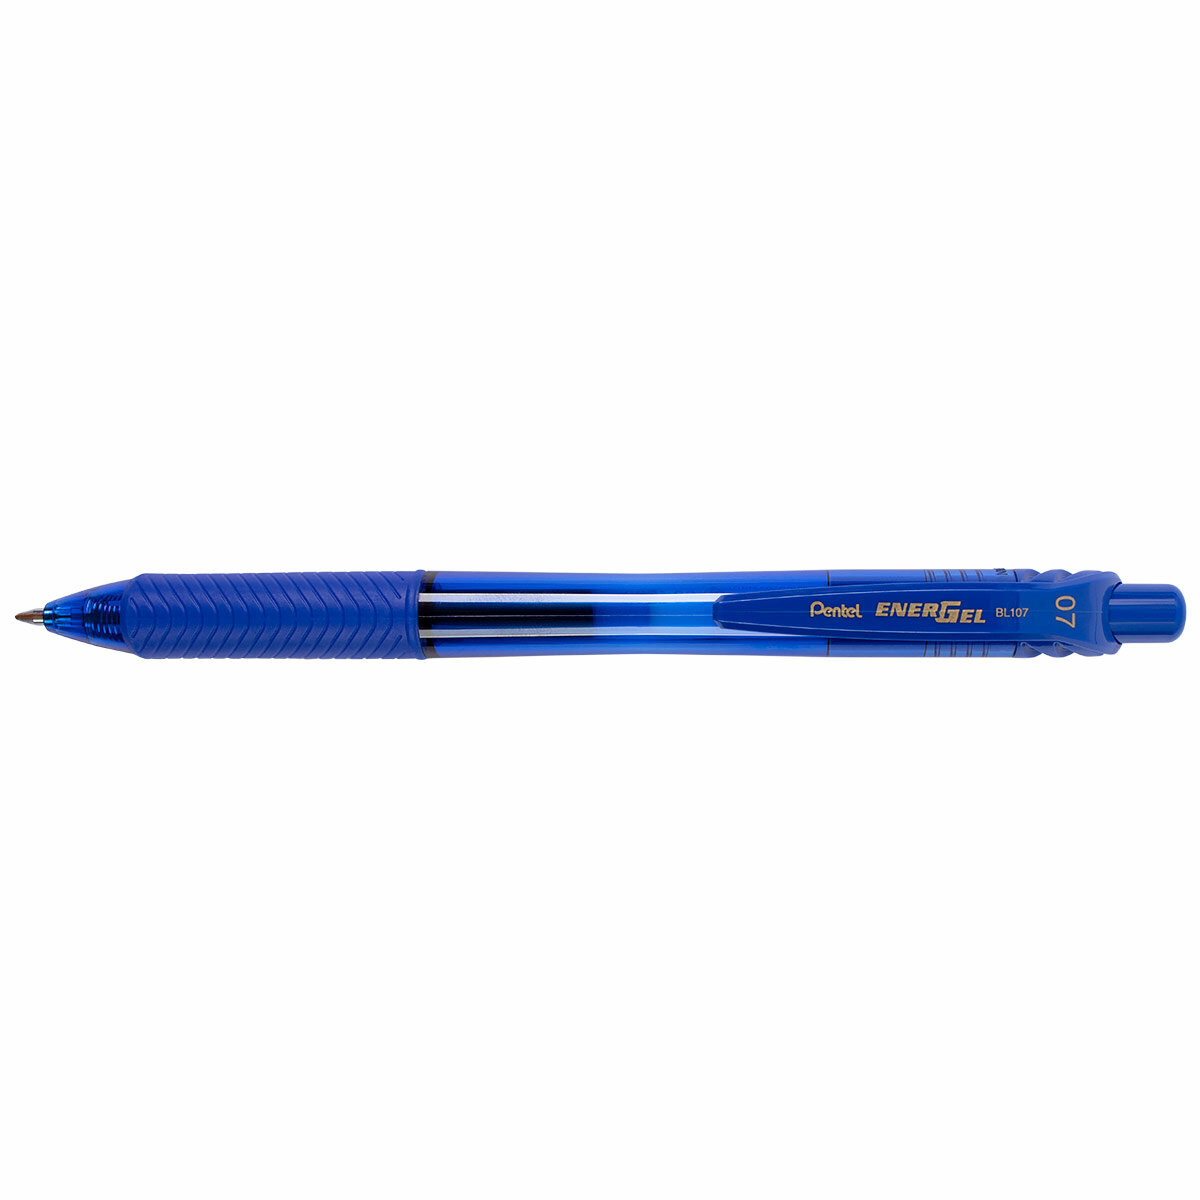 Ручка гелевая автоматическая "Pentel" Energel-X d 0.7 мм BL107-CX, синяя